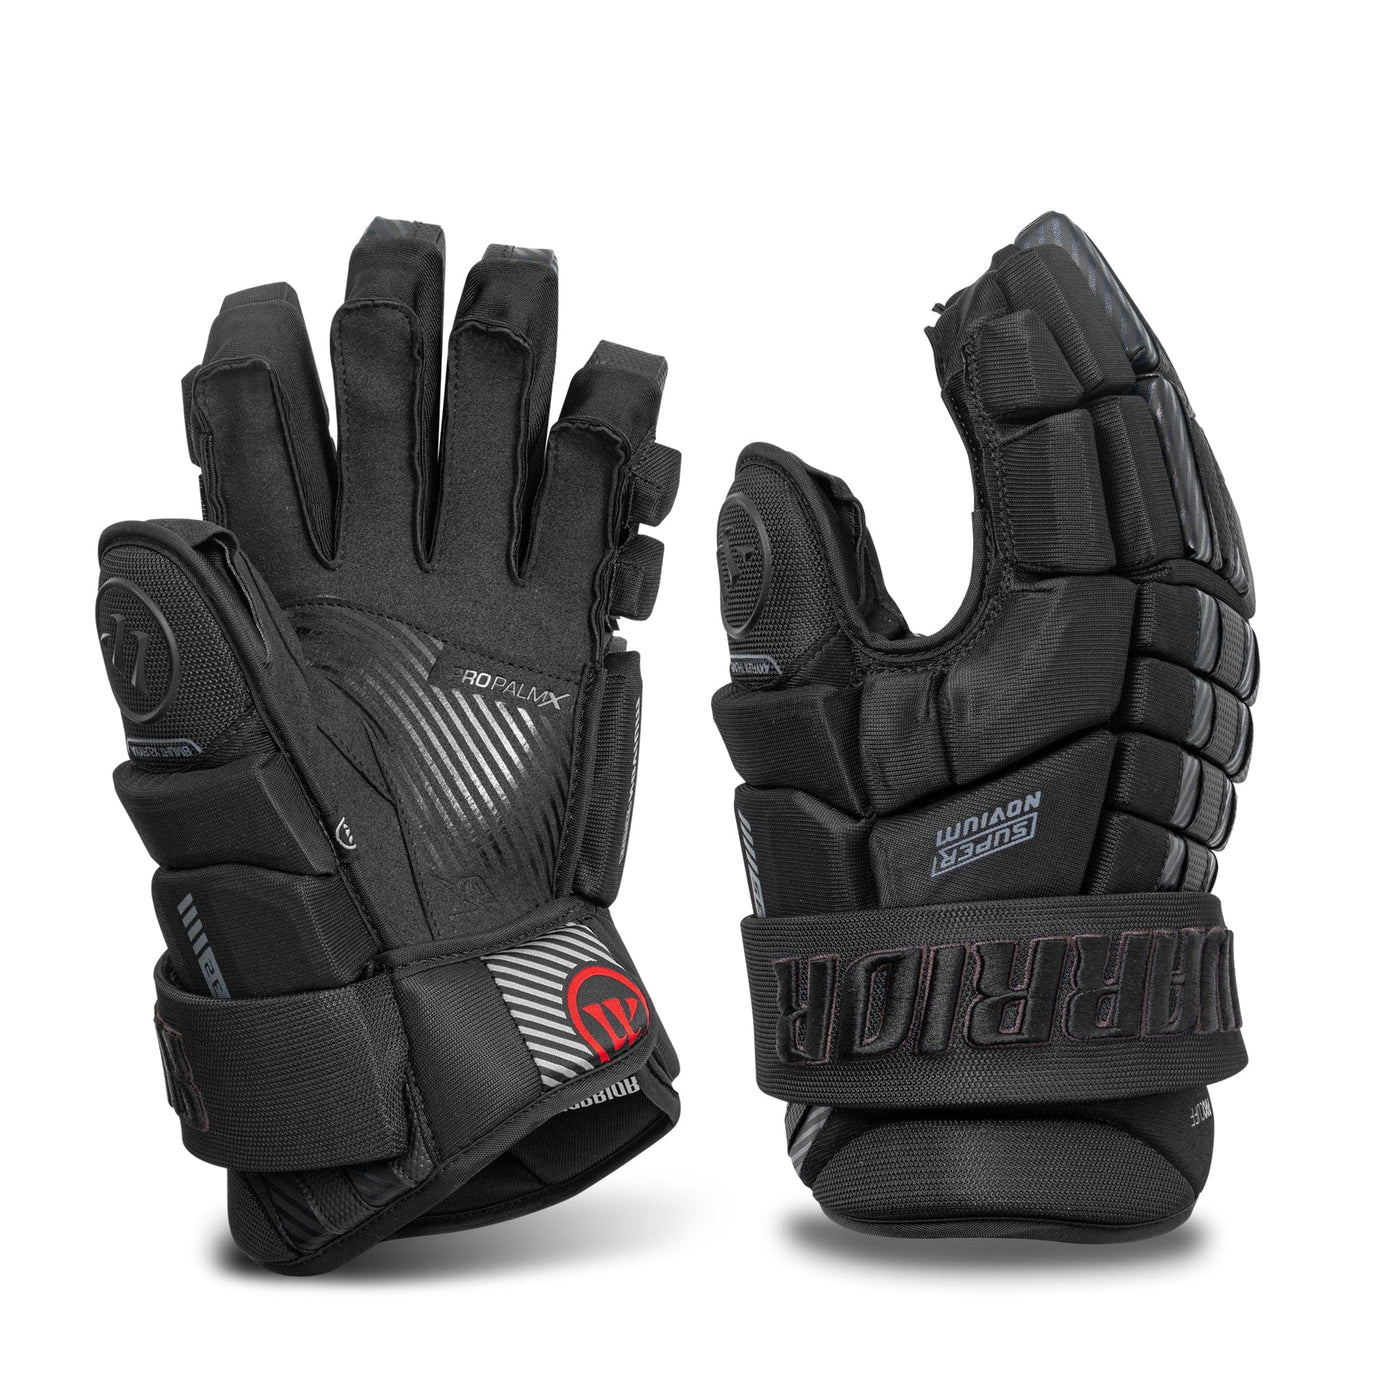 Warrior Super Novium Junior Hockey Gloves - The Hockey Shop Source For Sports